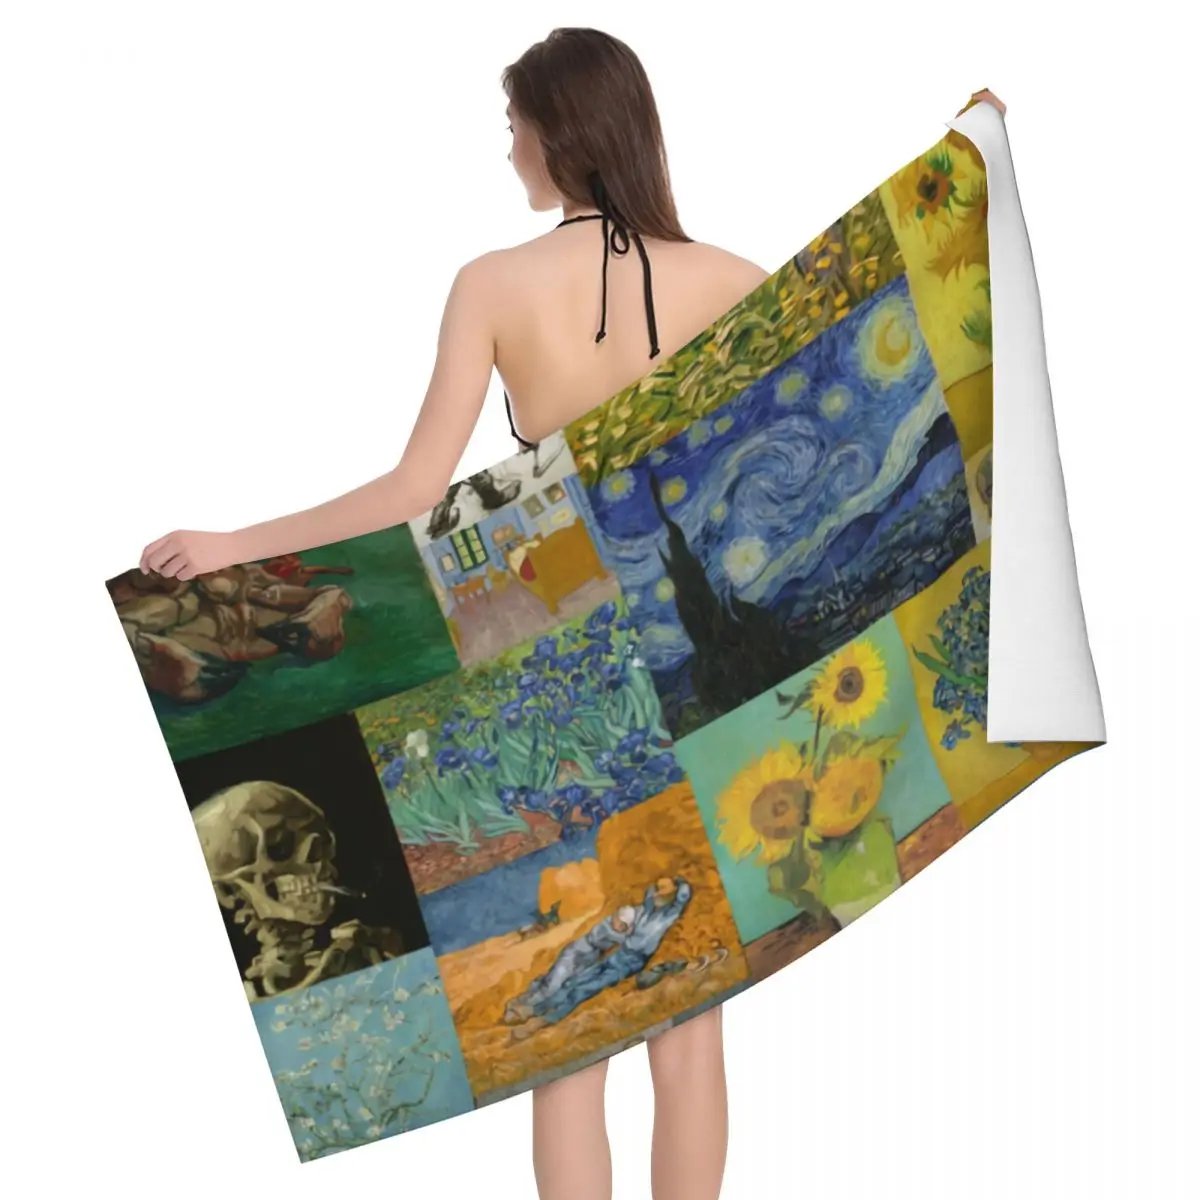 

Дышащее пляжное банное полотенце из микрофибры с коллажем Ван Гога, быстросохнущее полотенце для ванной комнаты с художественной росписью, полотенца для сауны